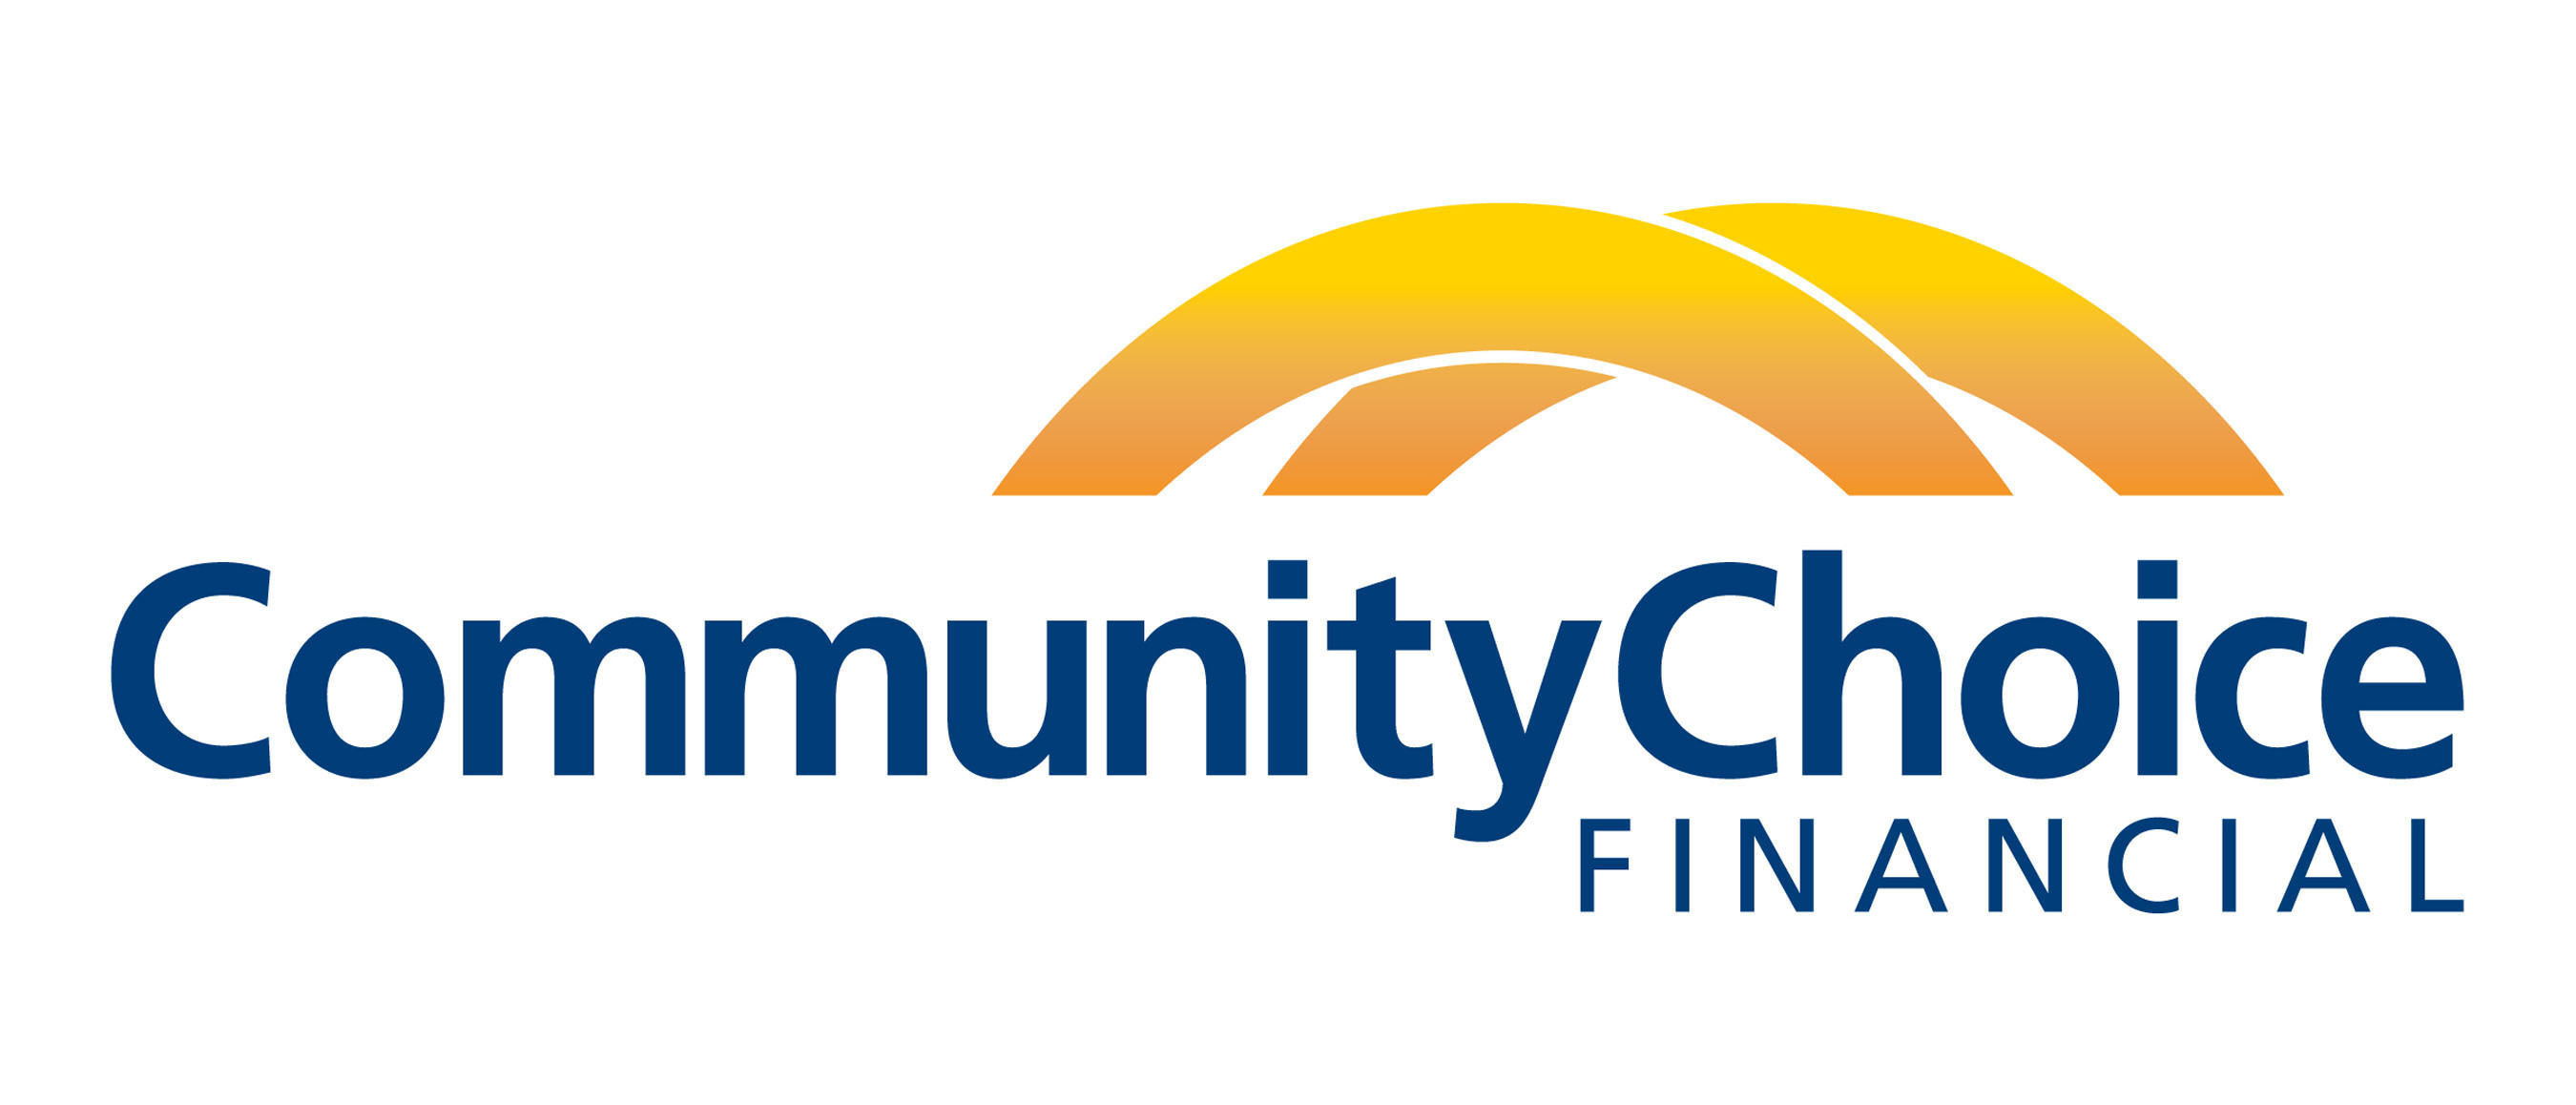 Community Choice Financial. (PRNewsFoto/Community Choice Financial Inc.) (PRNewsFoto/)